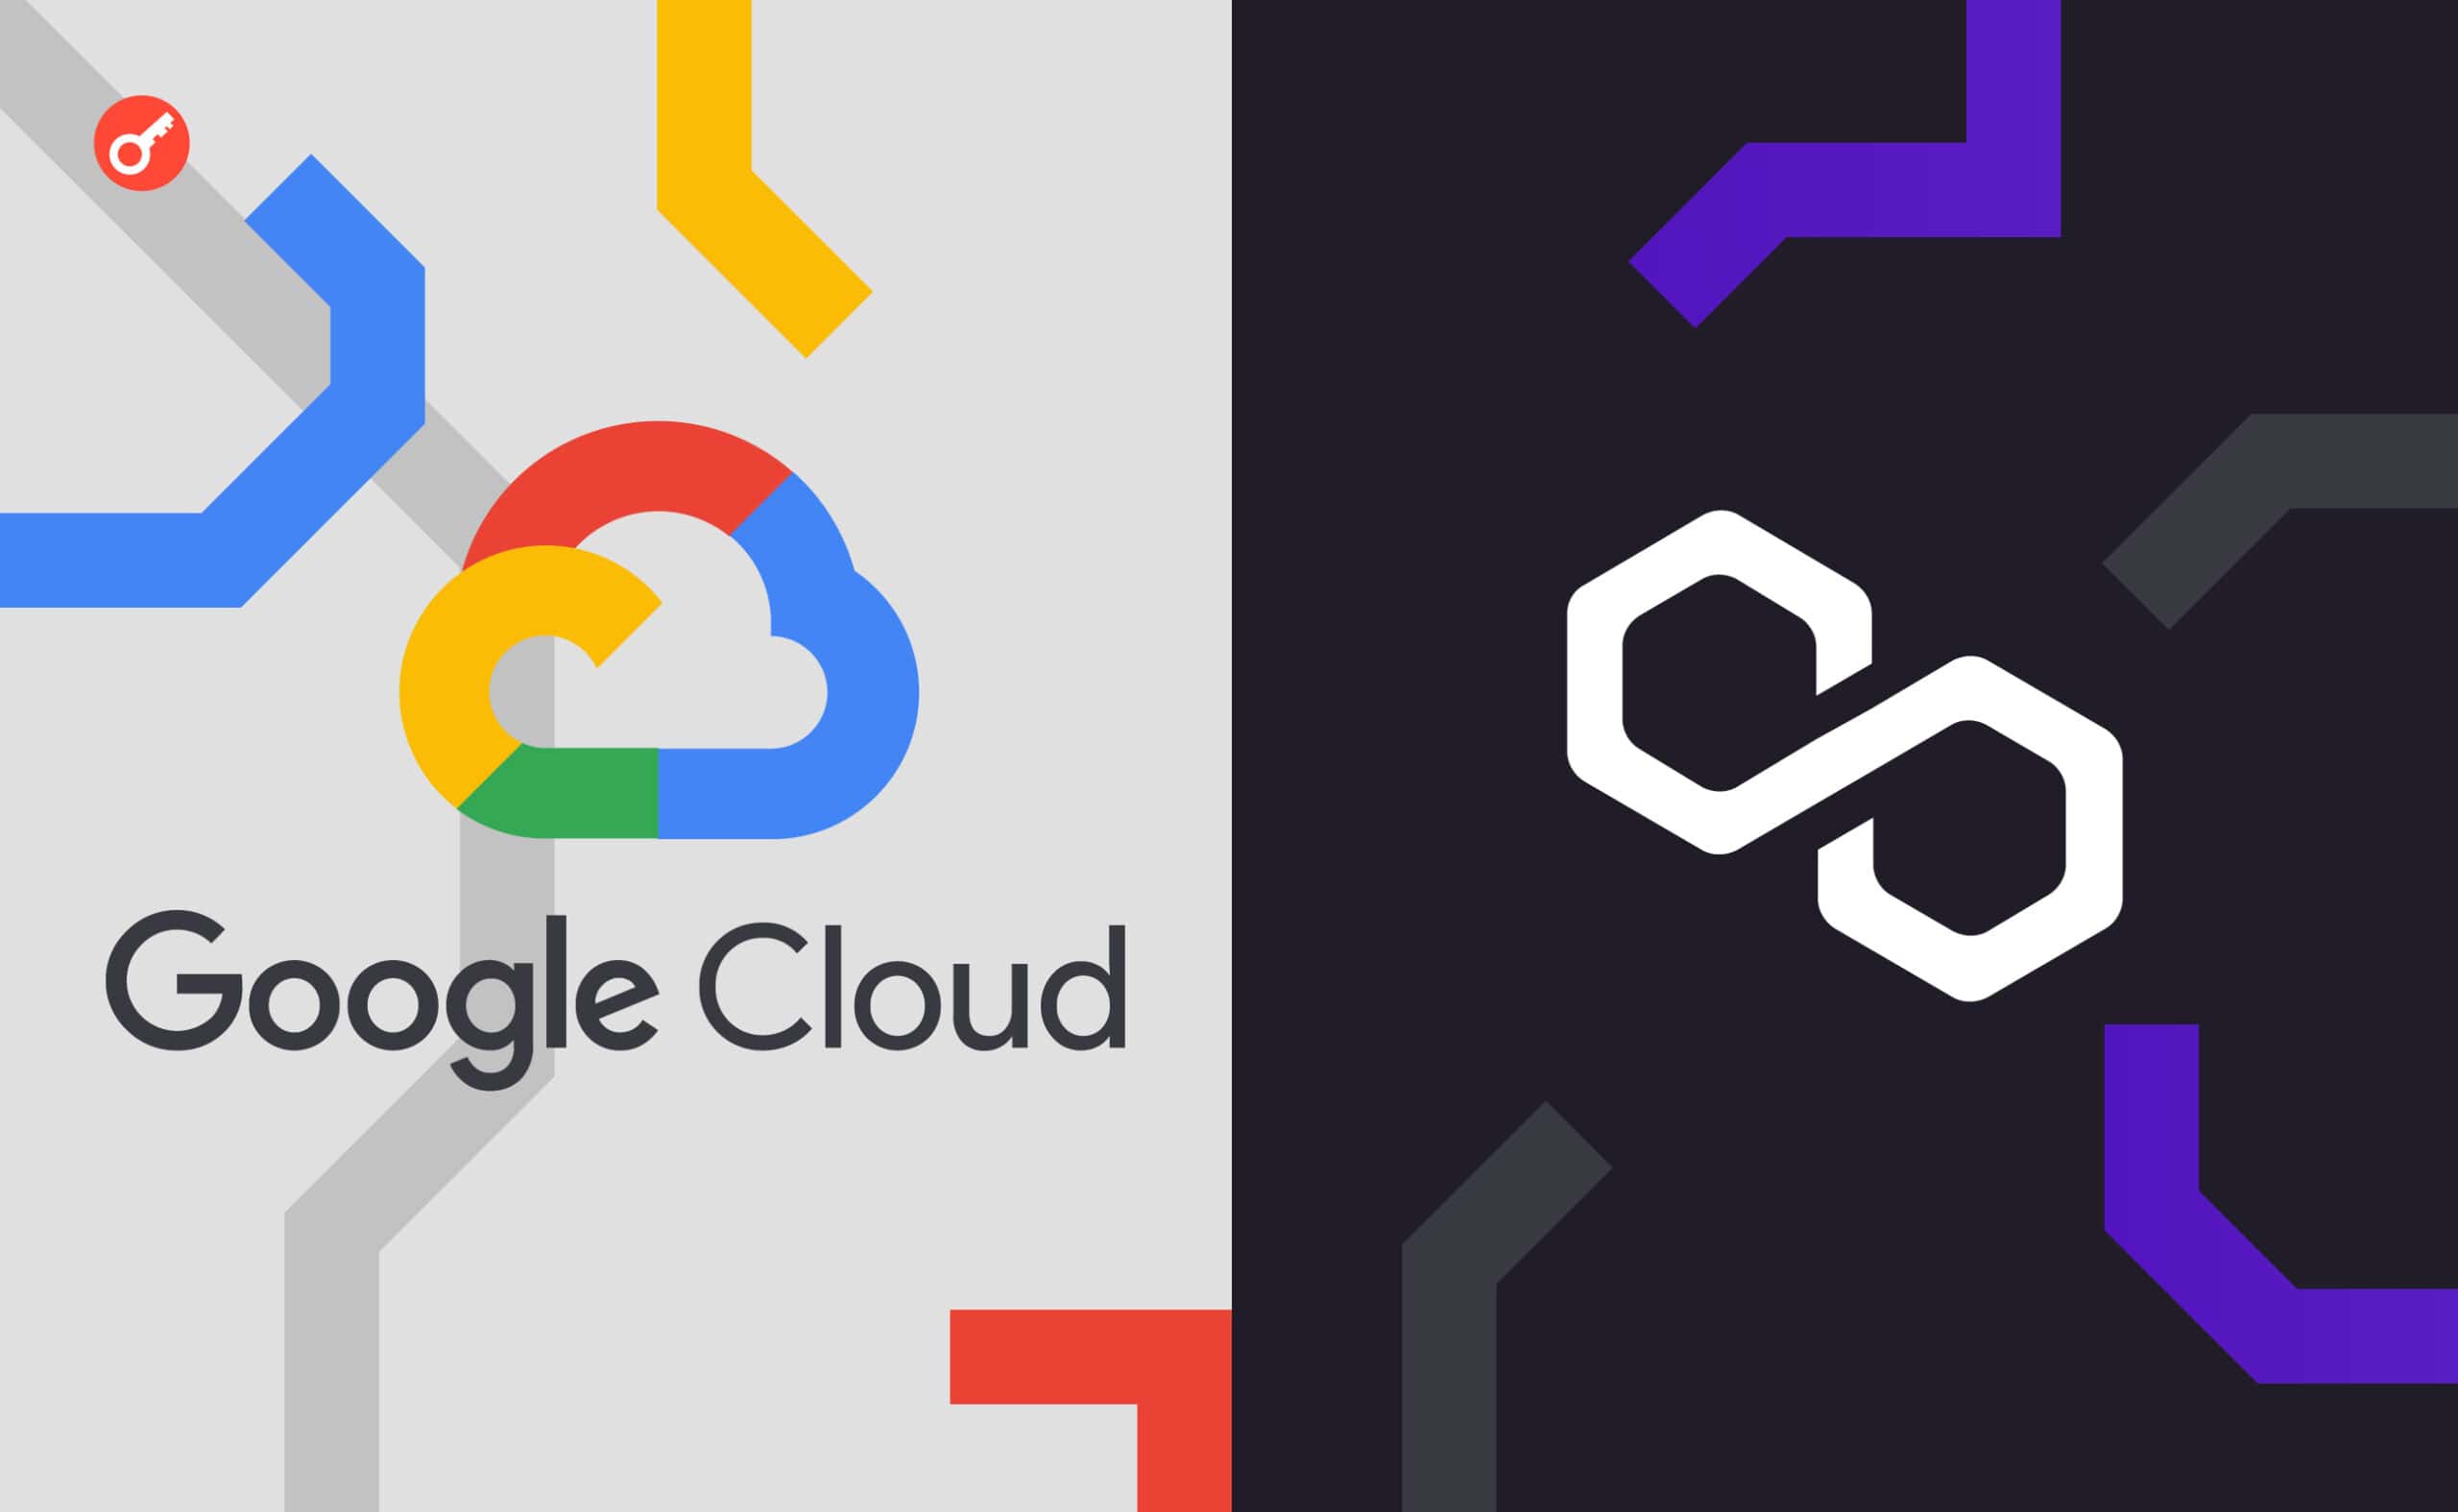 Google Cloud оголосили про партнерство з Polygon. Головний колаж новини.